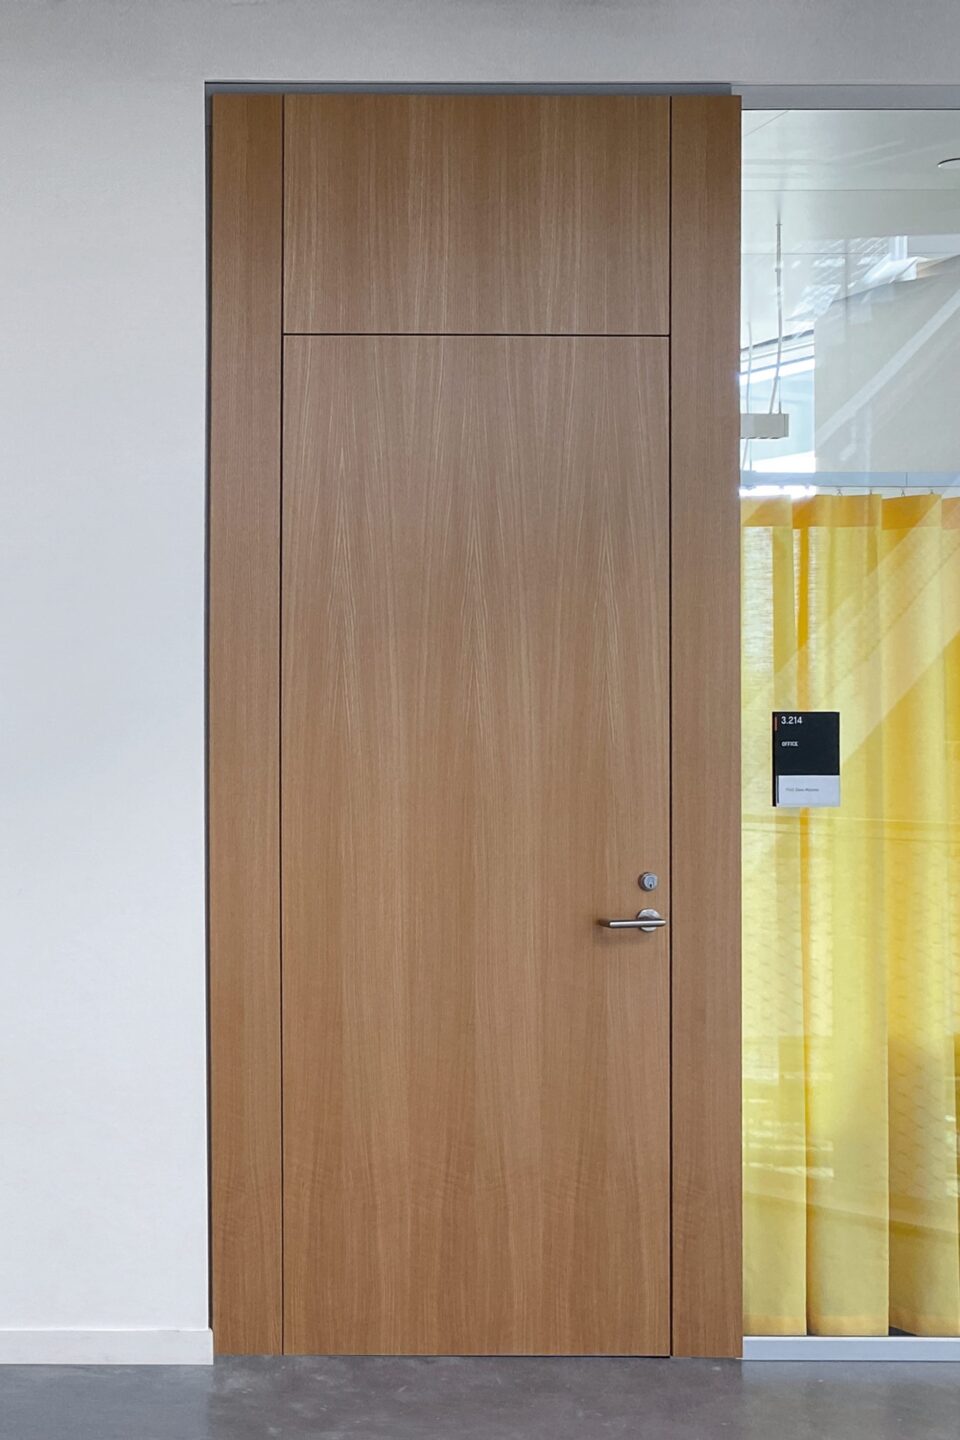 Wooden door element H70 with alum. frame 18/0 in portal design